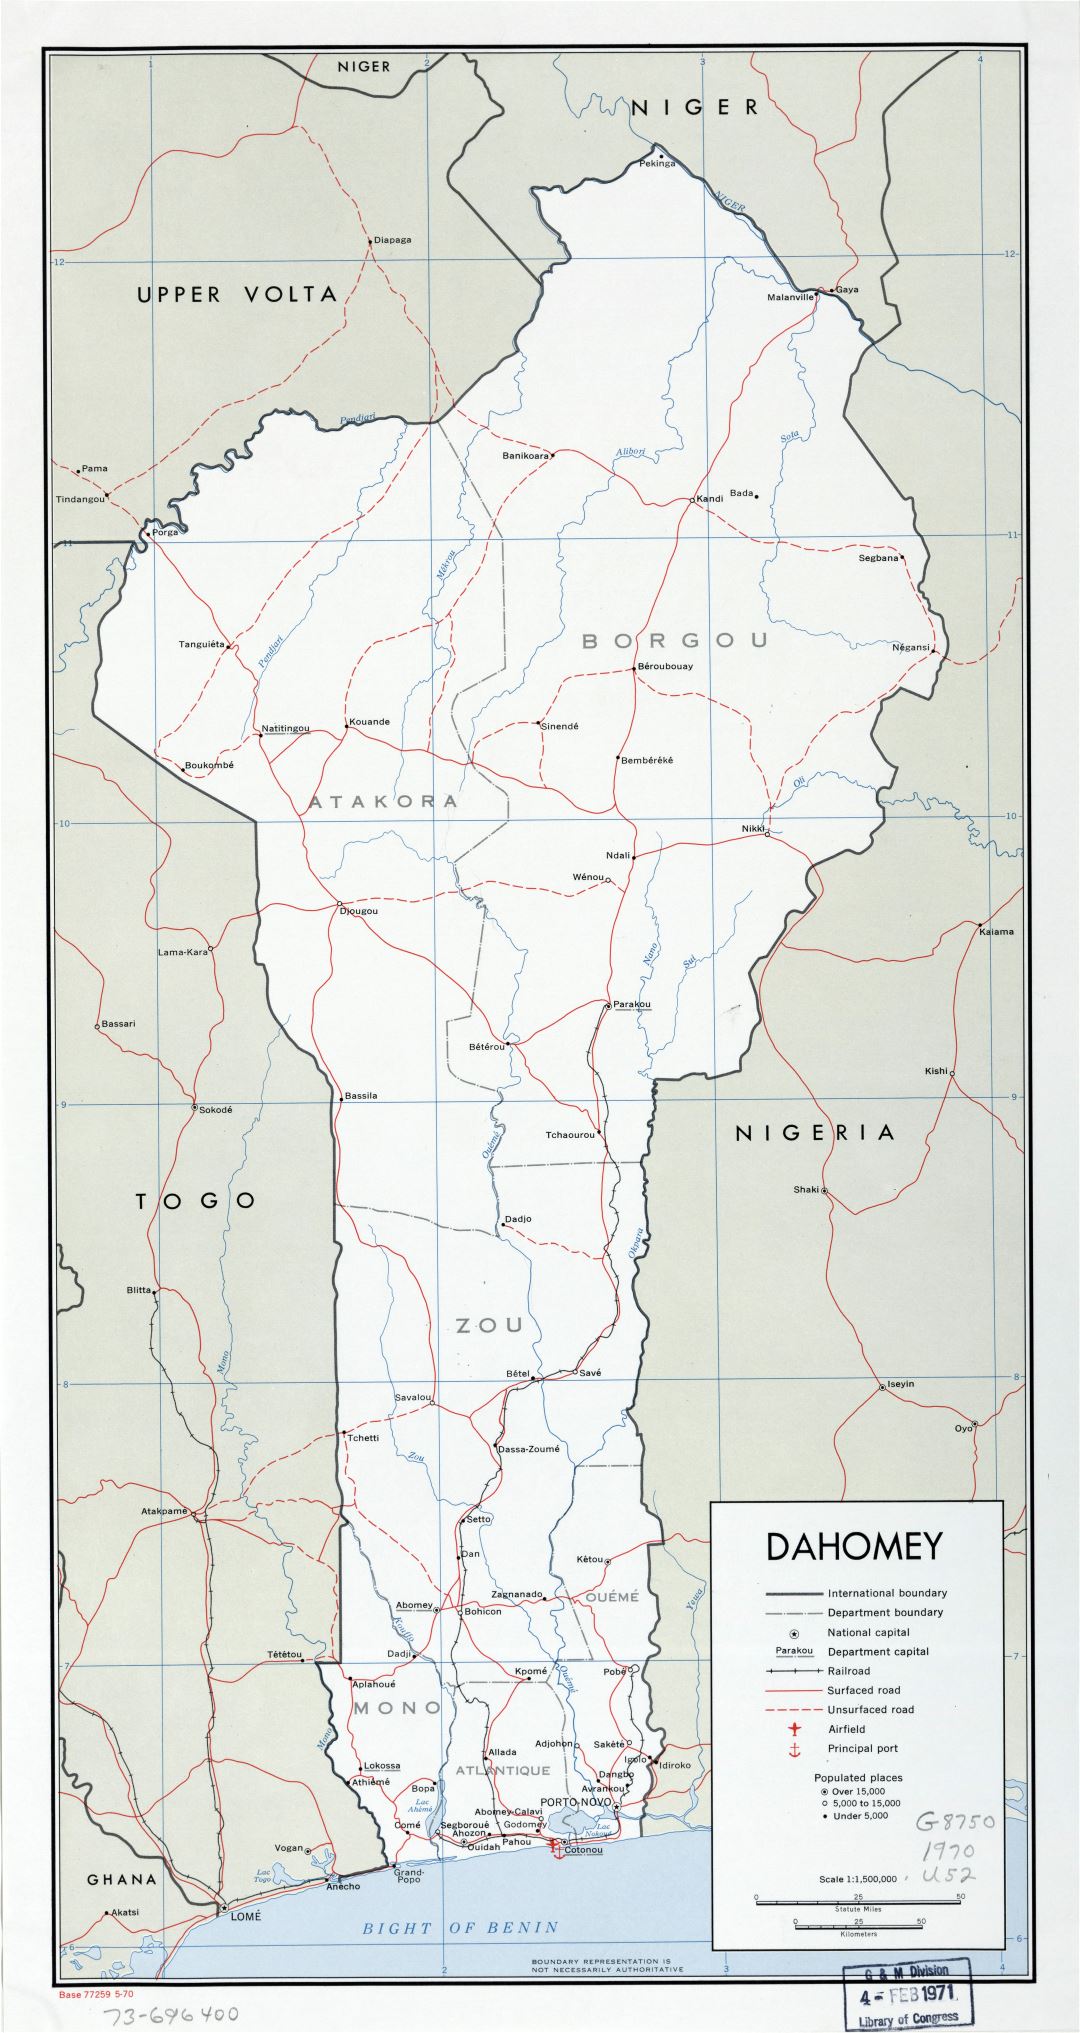 A gran escala mapa político y administrativo de Benin con carreteras, ferrocarriles, principales ciudades, puertos marítimos y aeropuertos - 1970